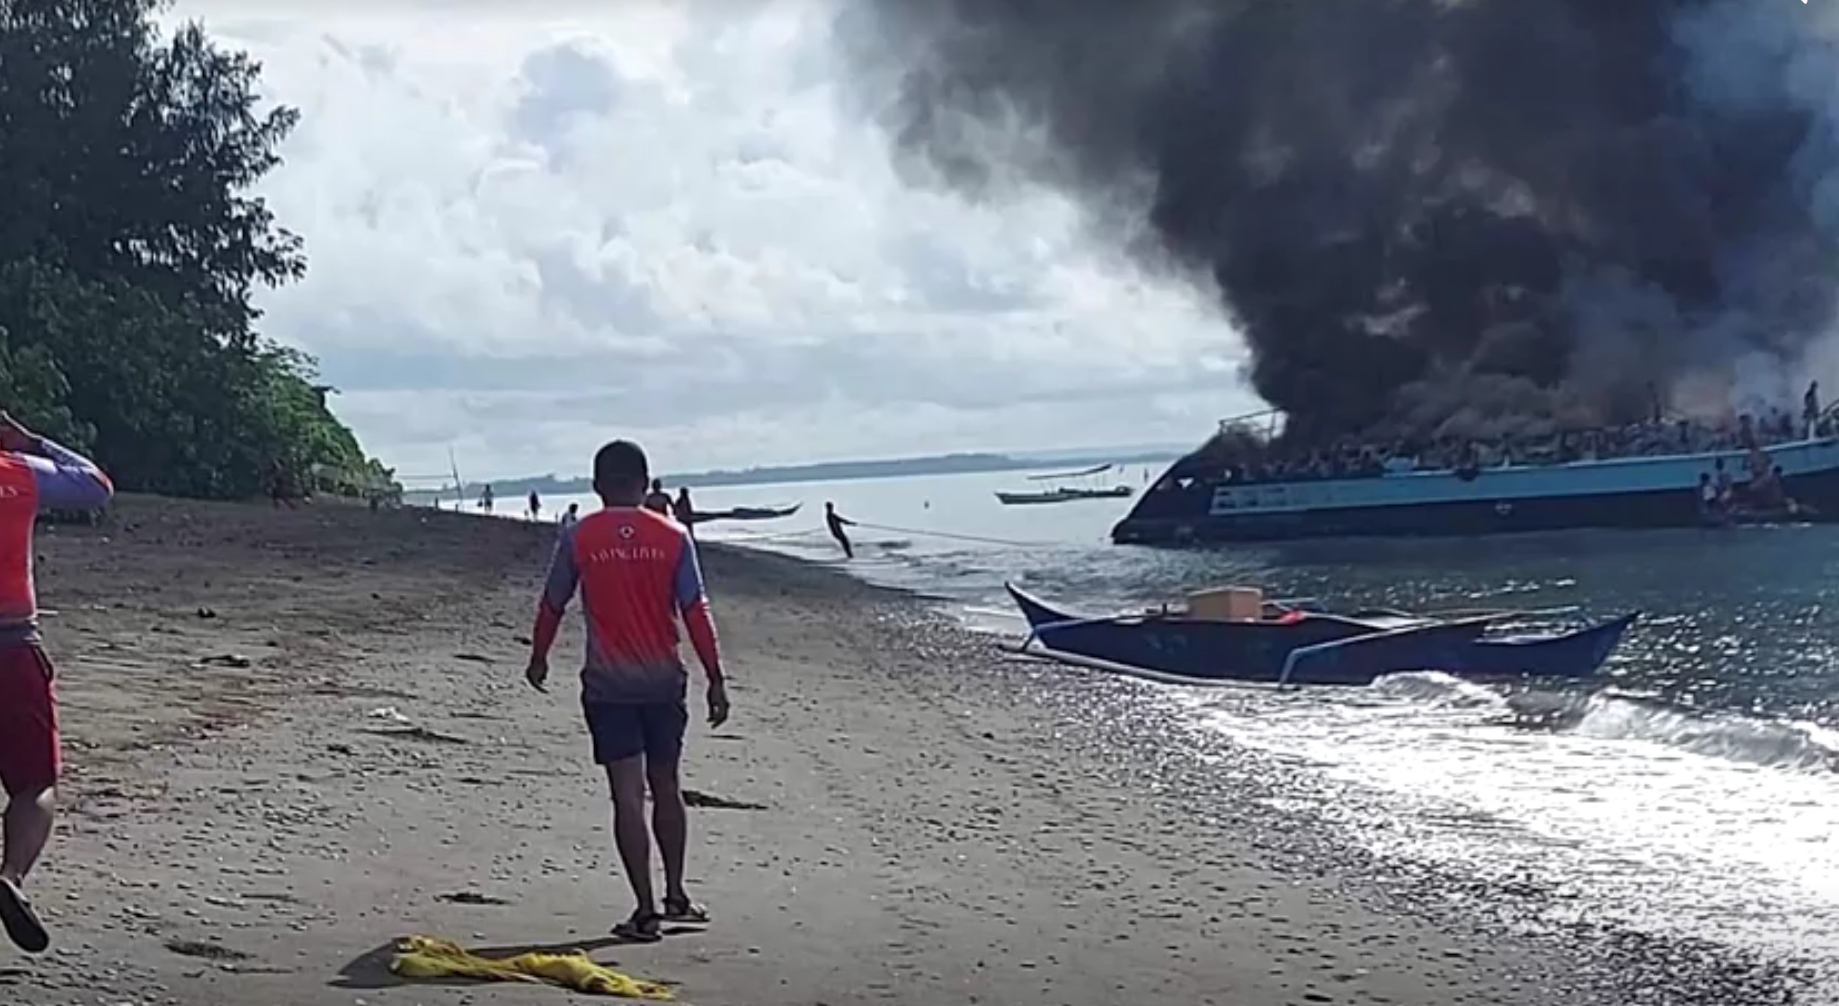 菲律宾一渡轮发生火灾